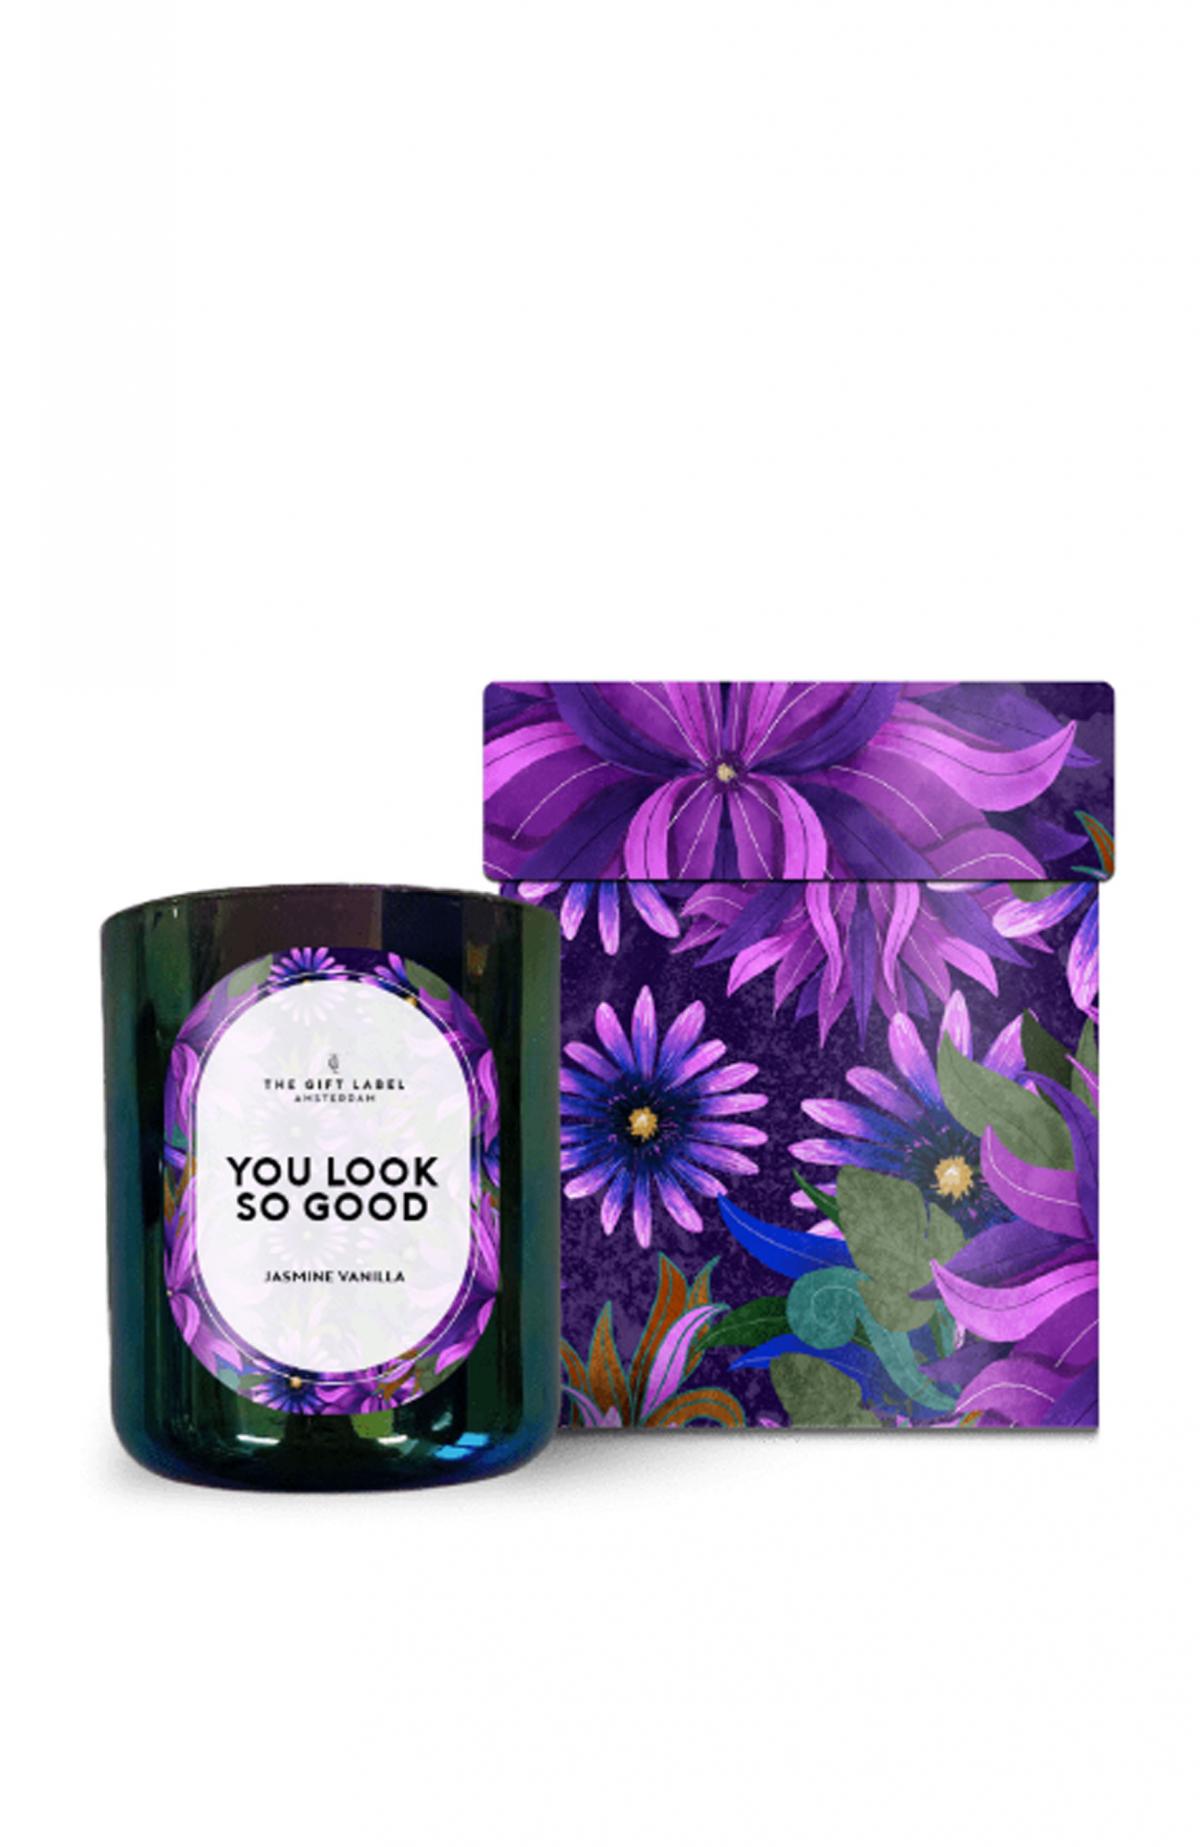 Geurkaars jasmijn-vanille in glazen houder met opschrift 'You look so good'